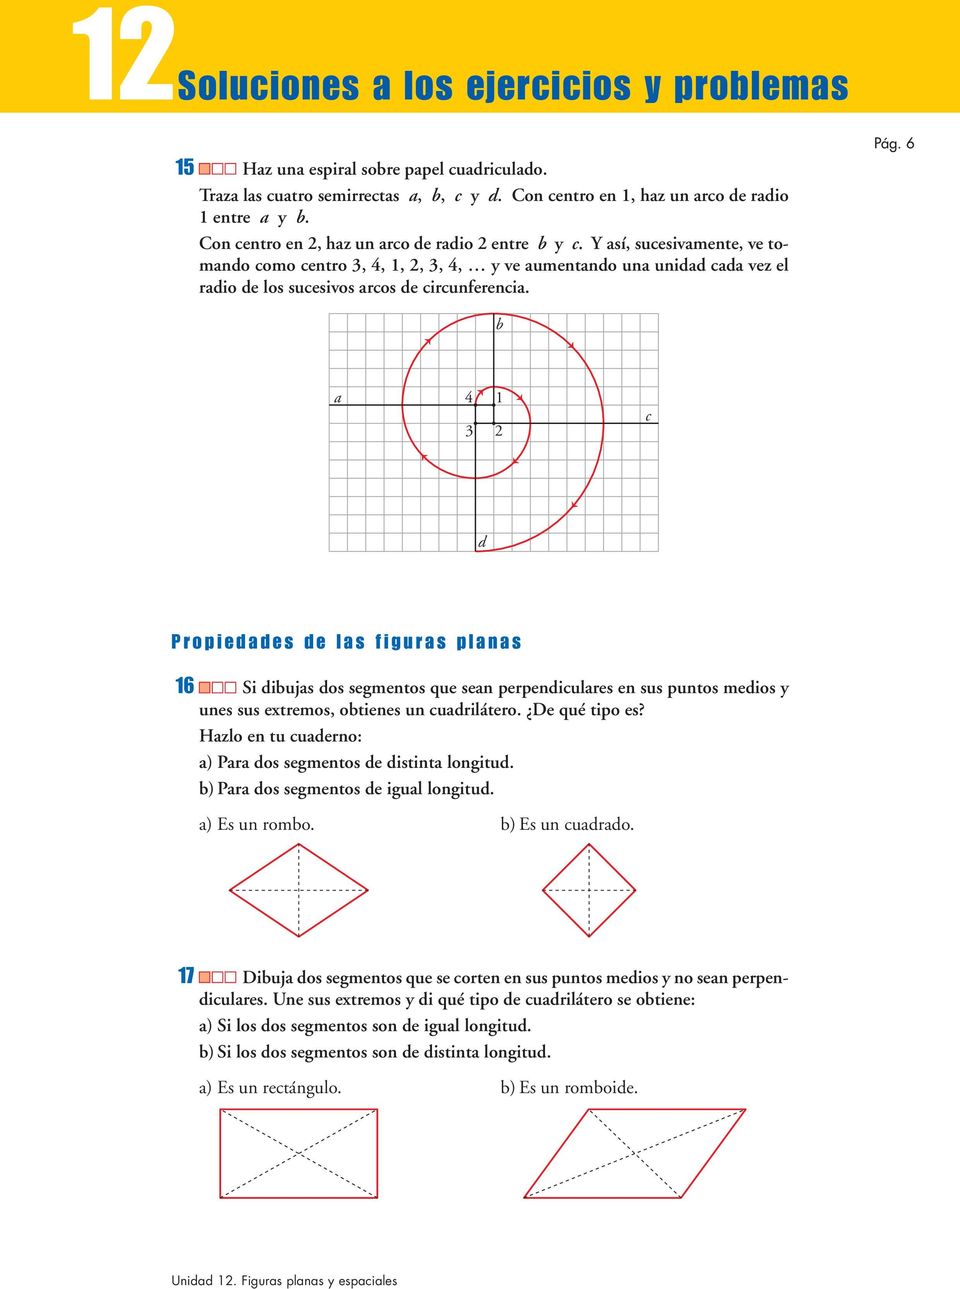 6 b a 4 3 1 2 c d Propiedades de las figuras planas 16 Si dibujas dos segmentos que sean perpendiculares en sus puntos medios y unes sus extremos, obtienes un cuadrilátero. De qué tipo es?